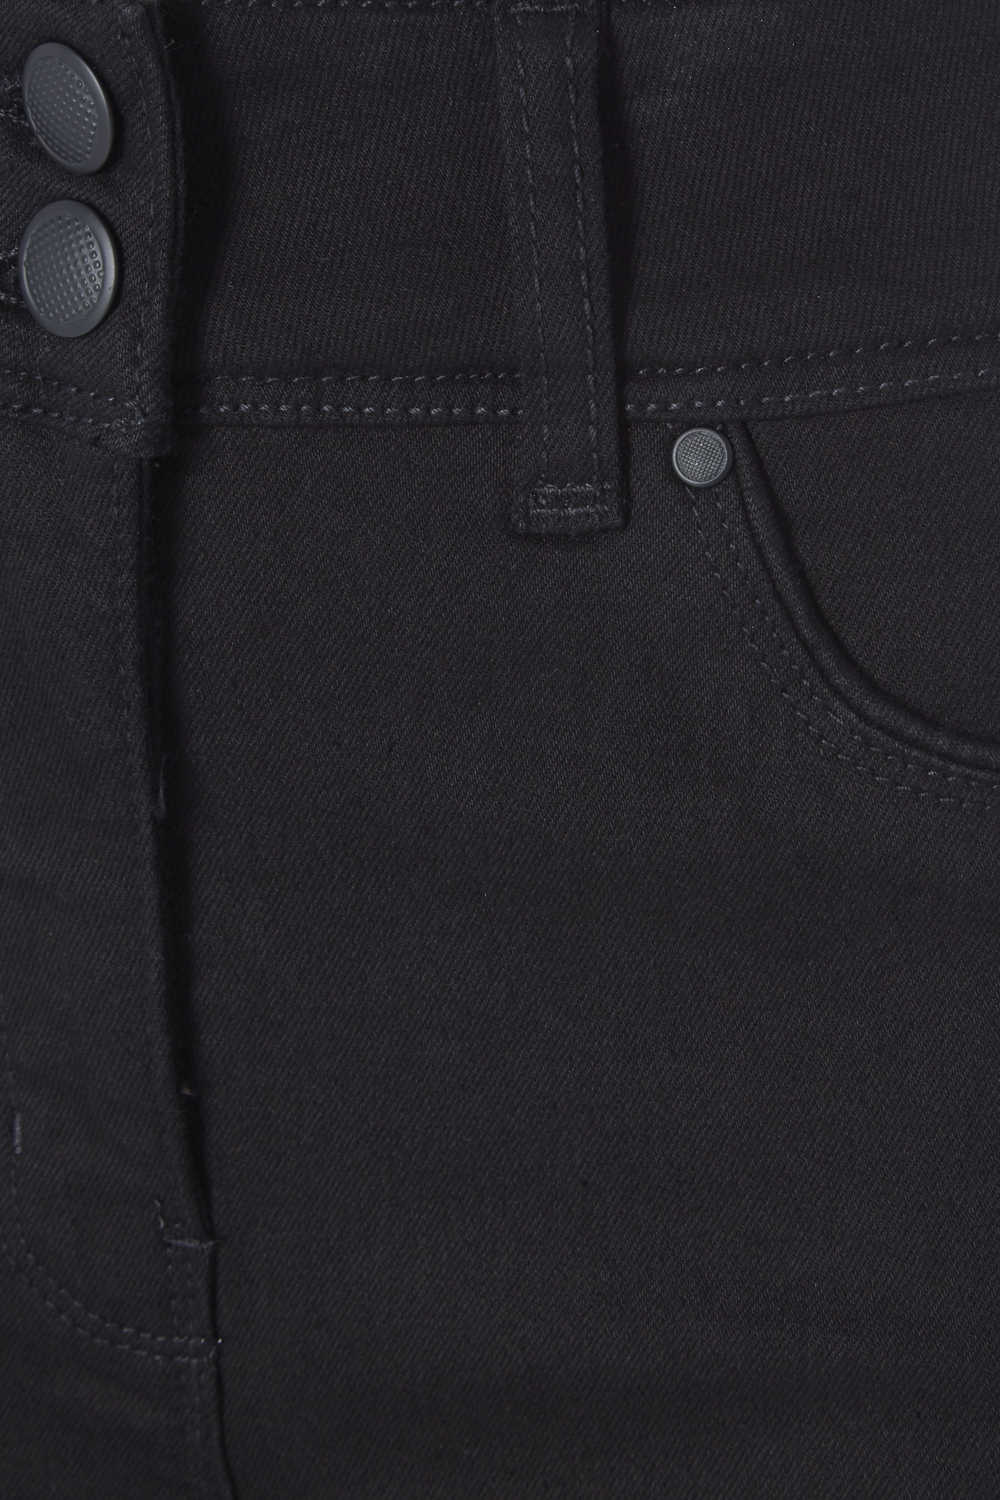 Black Shaper Jeans, Image 3 of 3